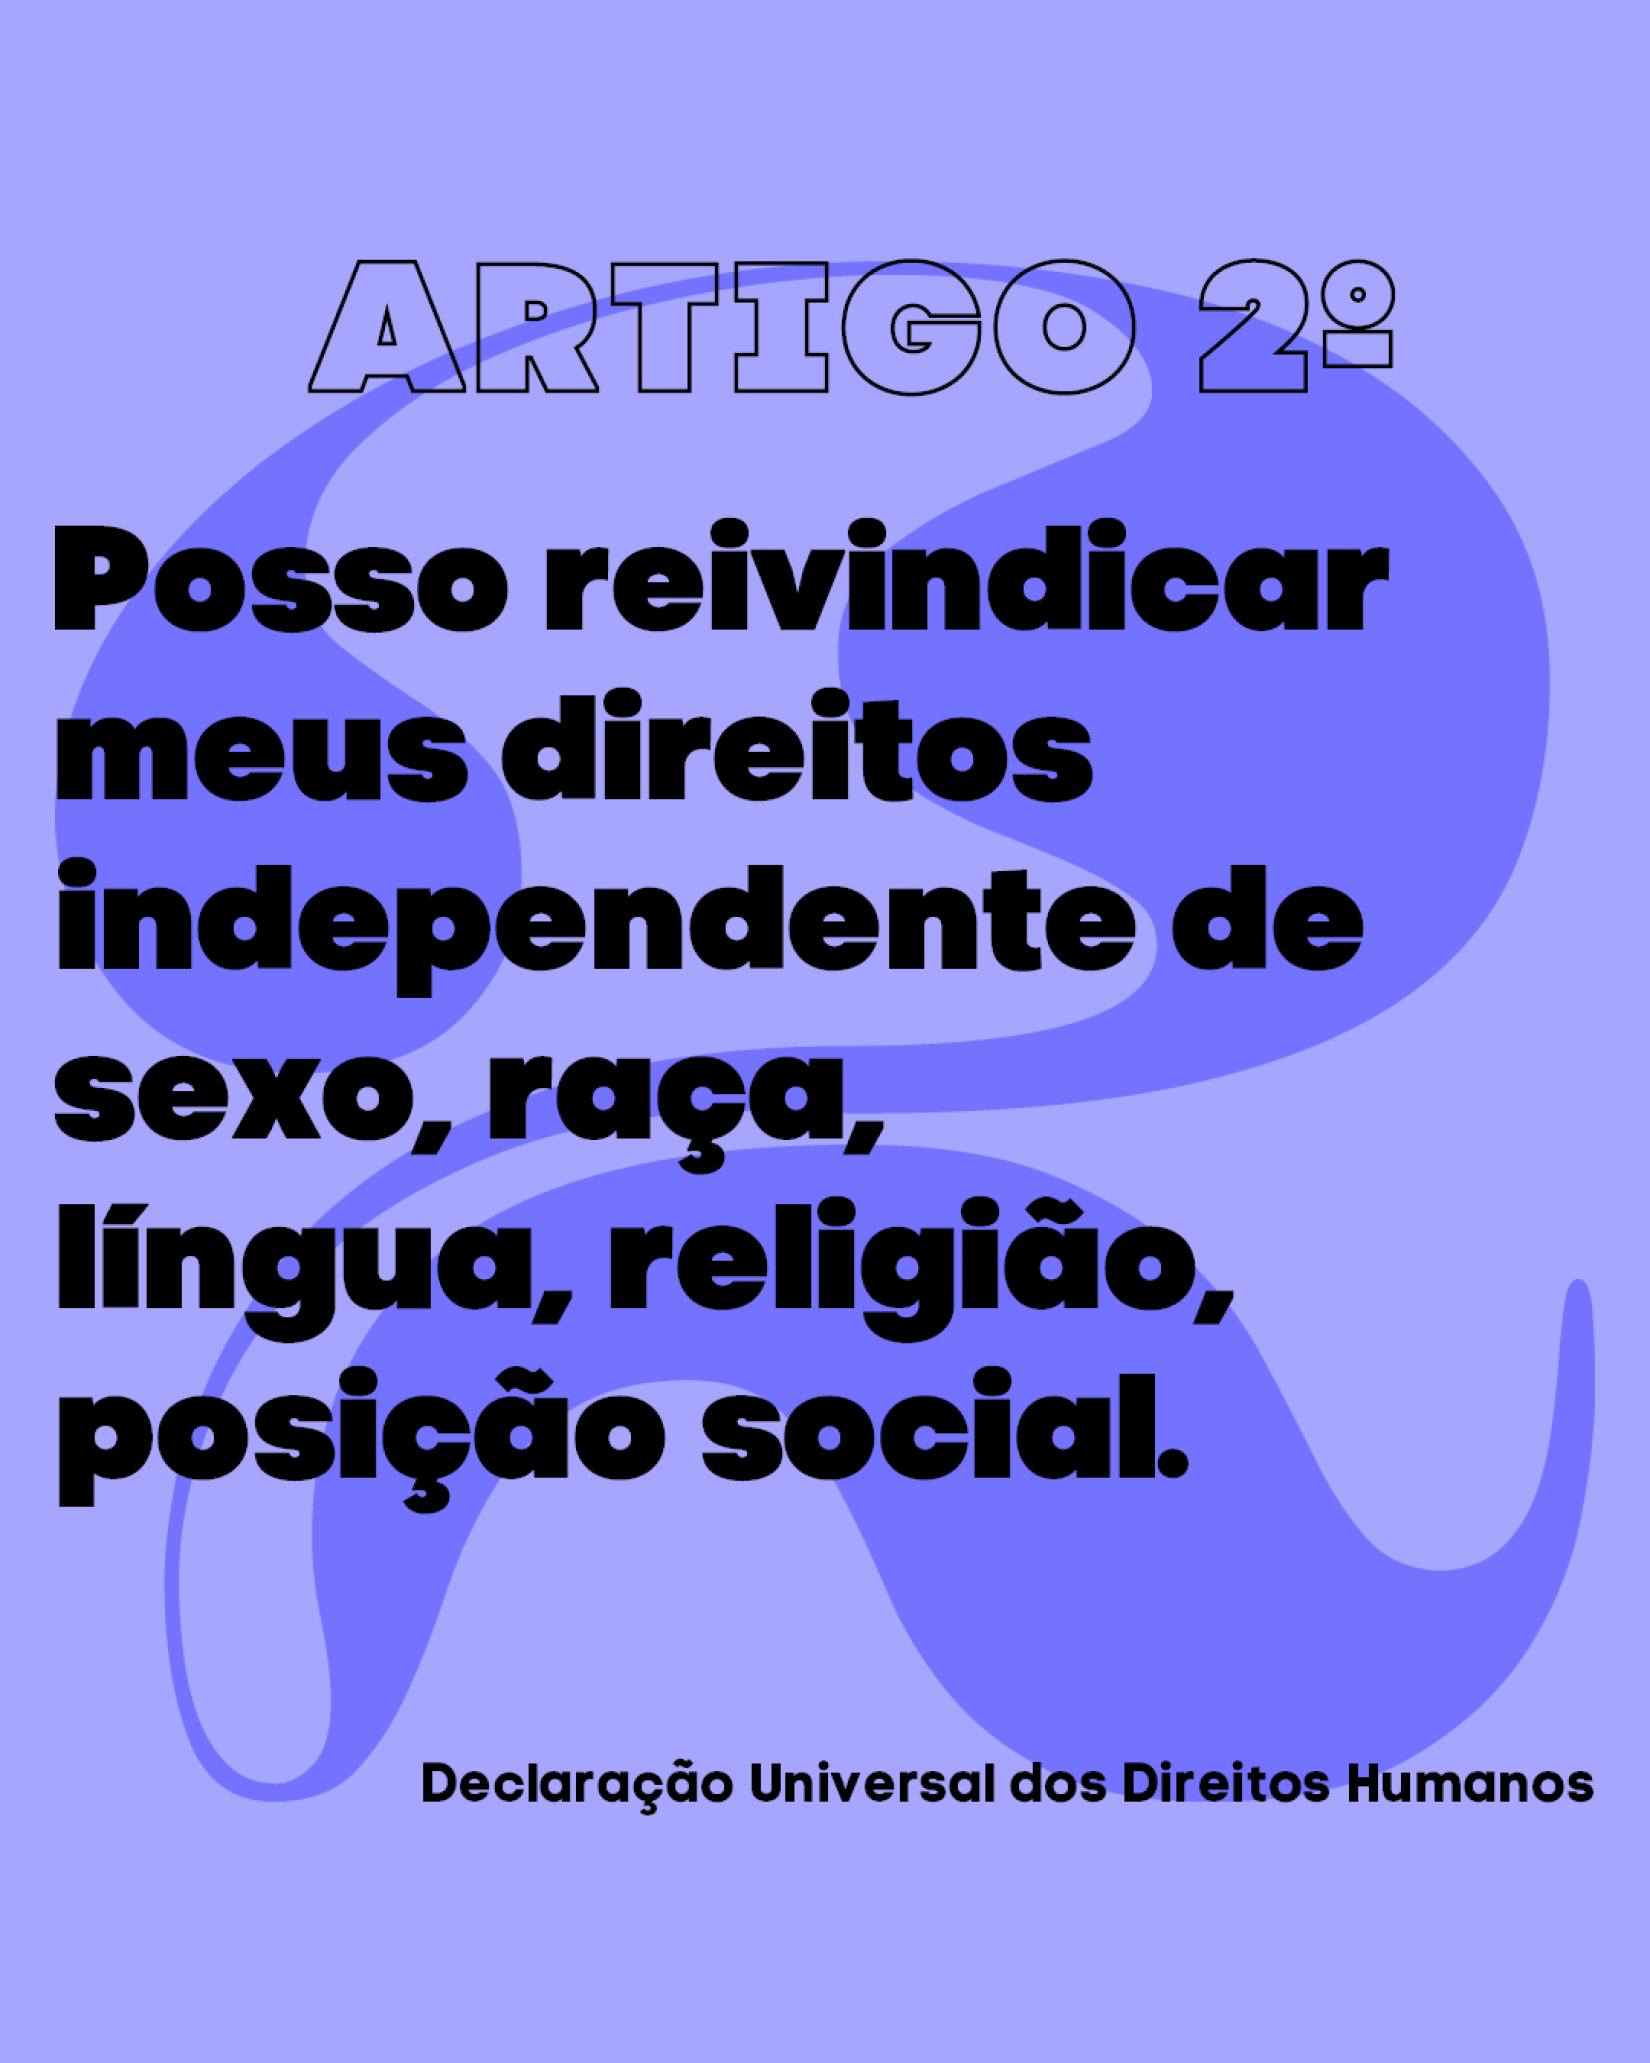 Artigo 2º da Declaração, em primeira pessoa: “Posso reivindicar meus direitos independente de sexo, raça, língua, religião, posição social.